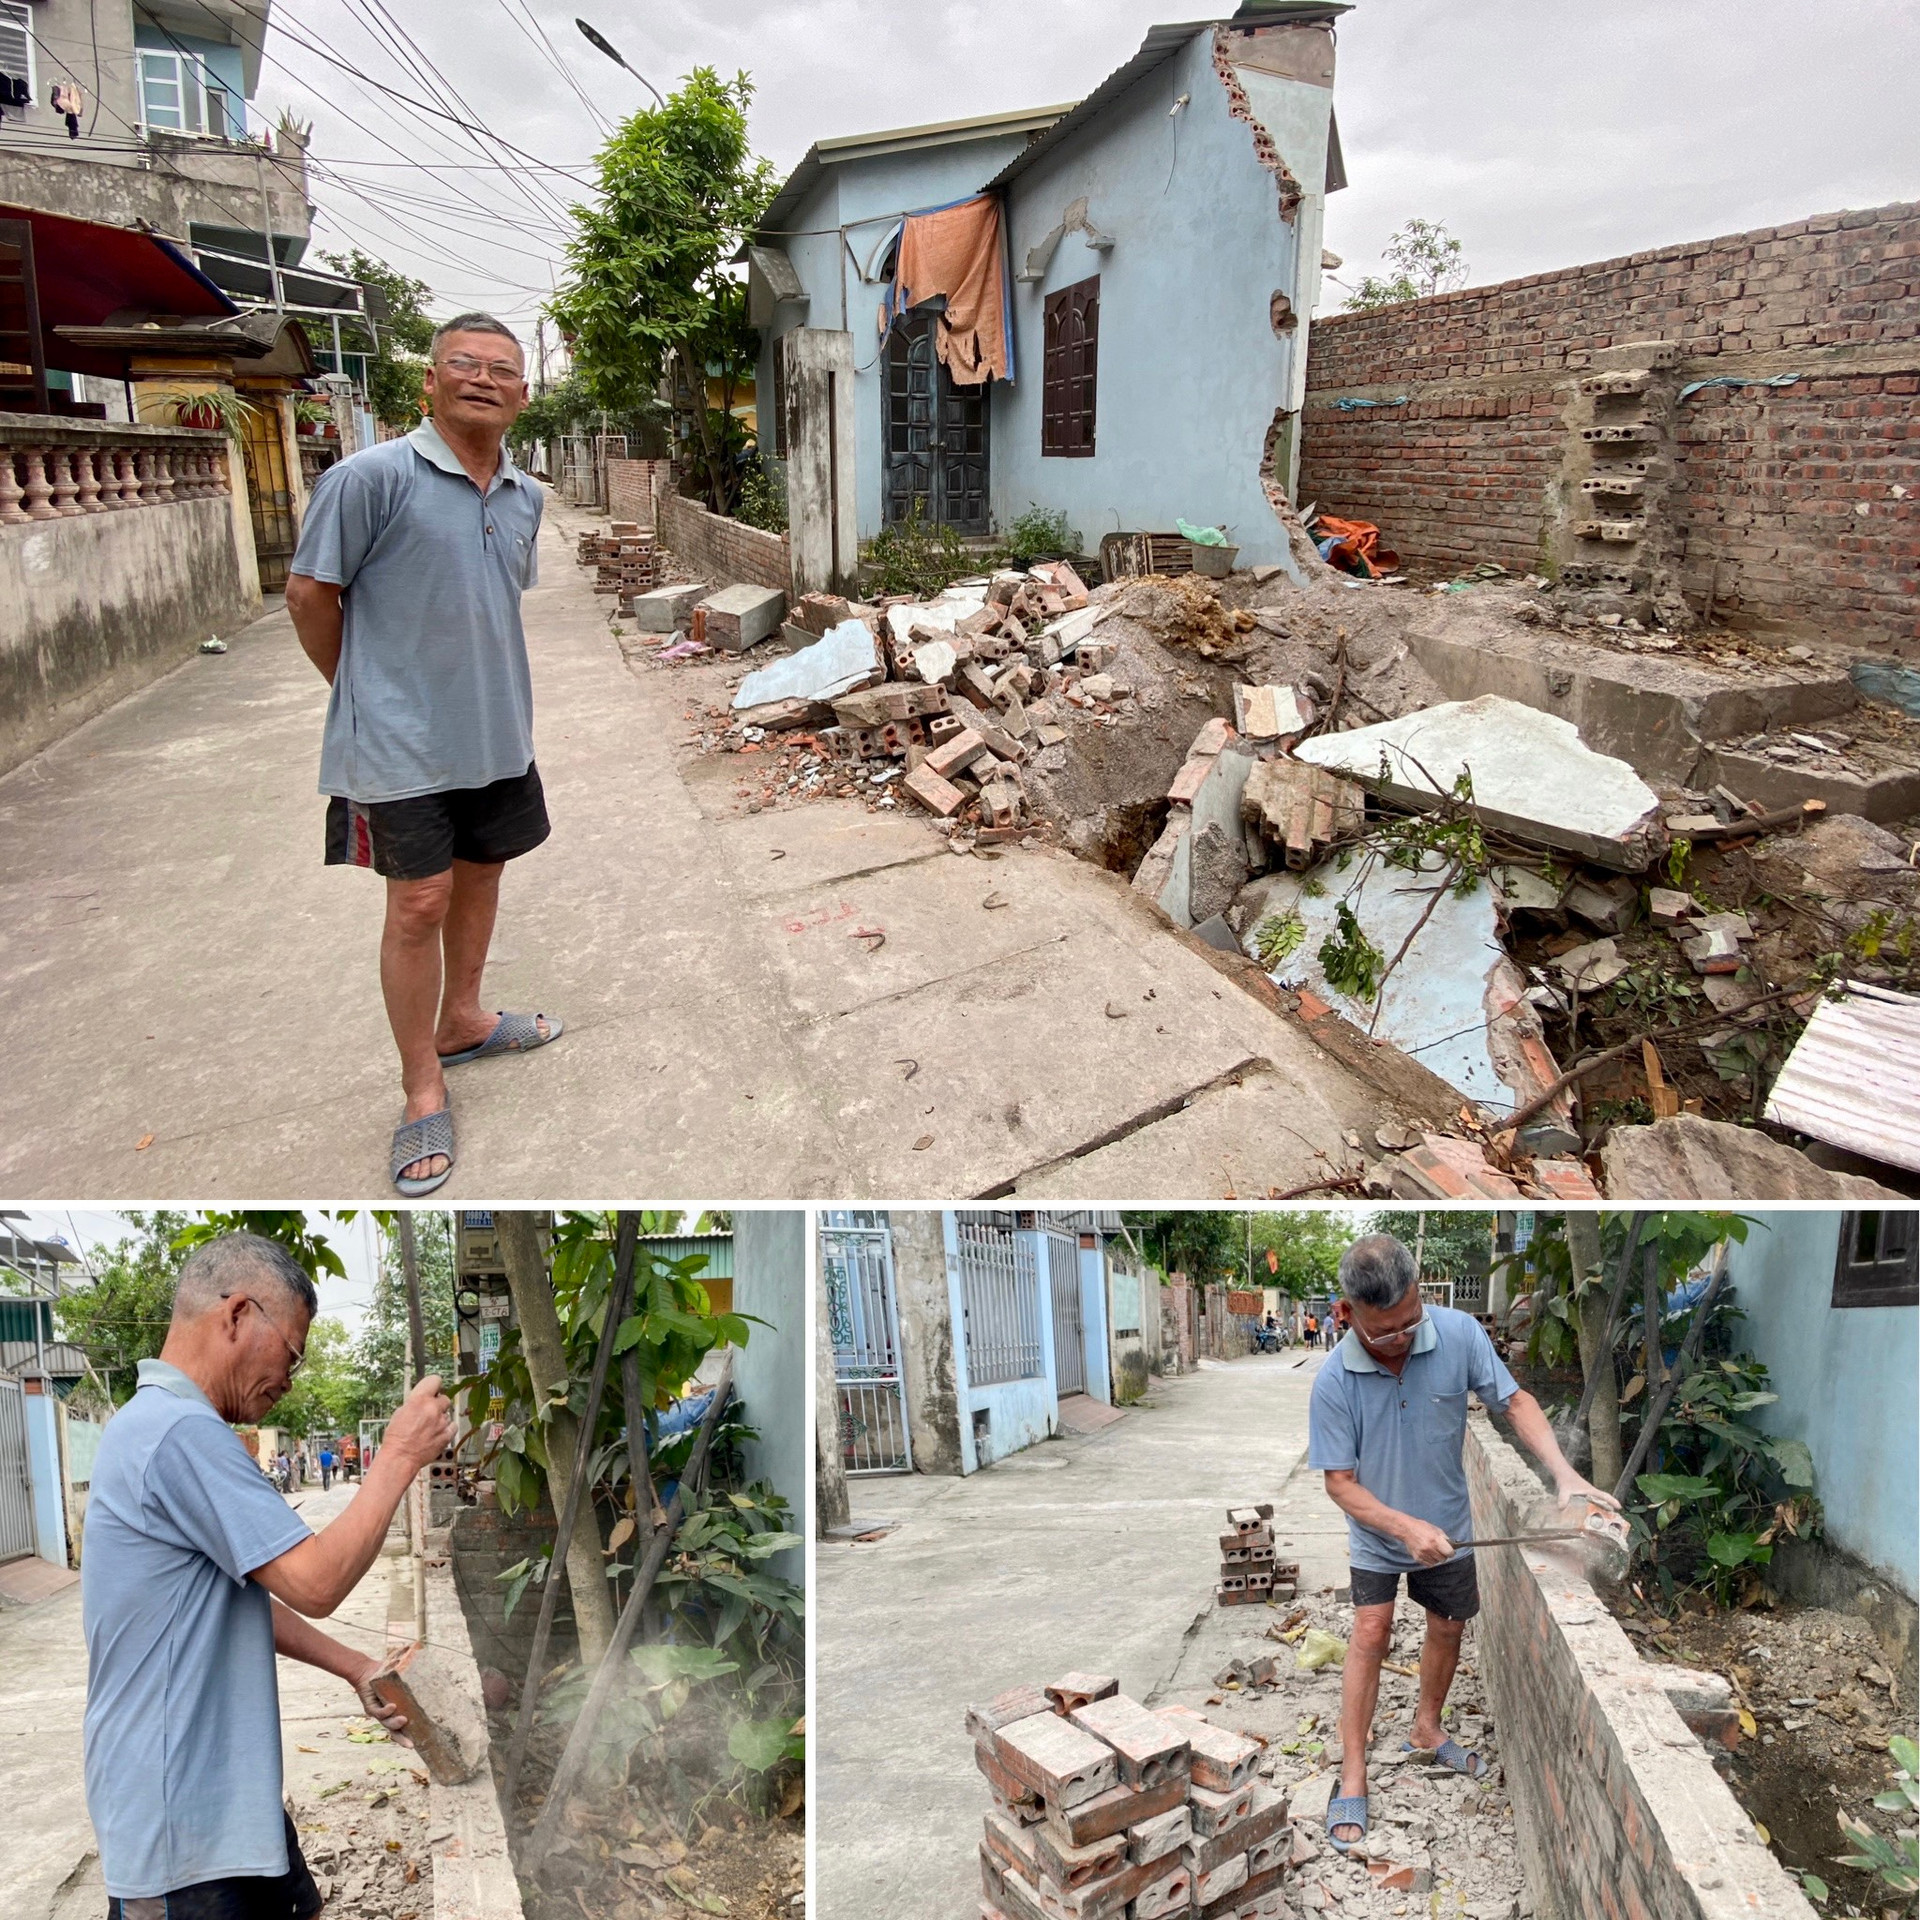 Ông Nguyễn Văn Vinh tự hào cho biết các thành viên trong gia đình ông sống tại đây này đều tự nguyện phá dỡ nhà của mình để ủng hộ đất làm đường cho khu phố